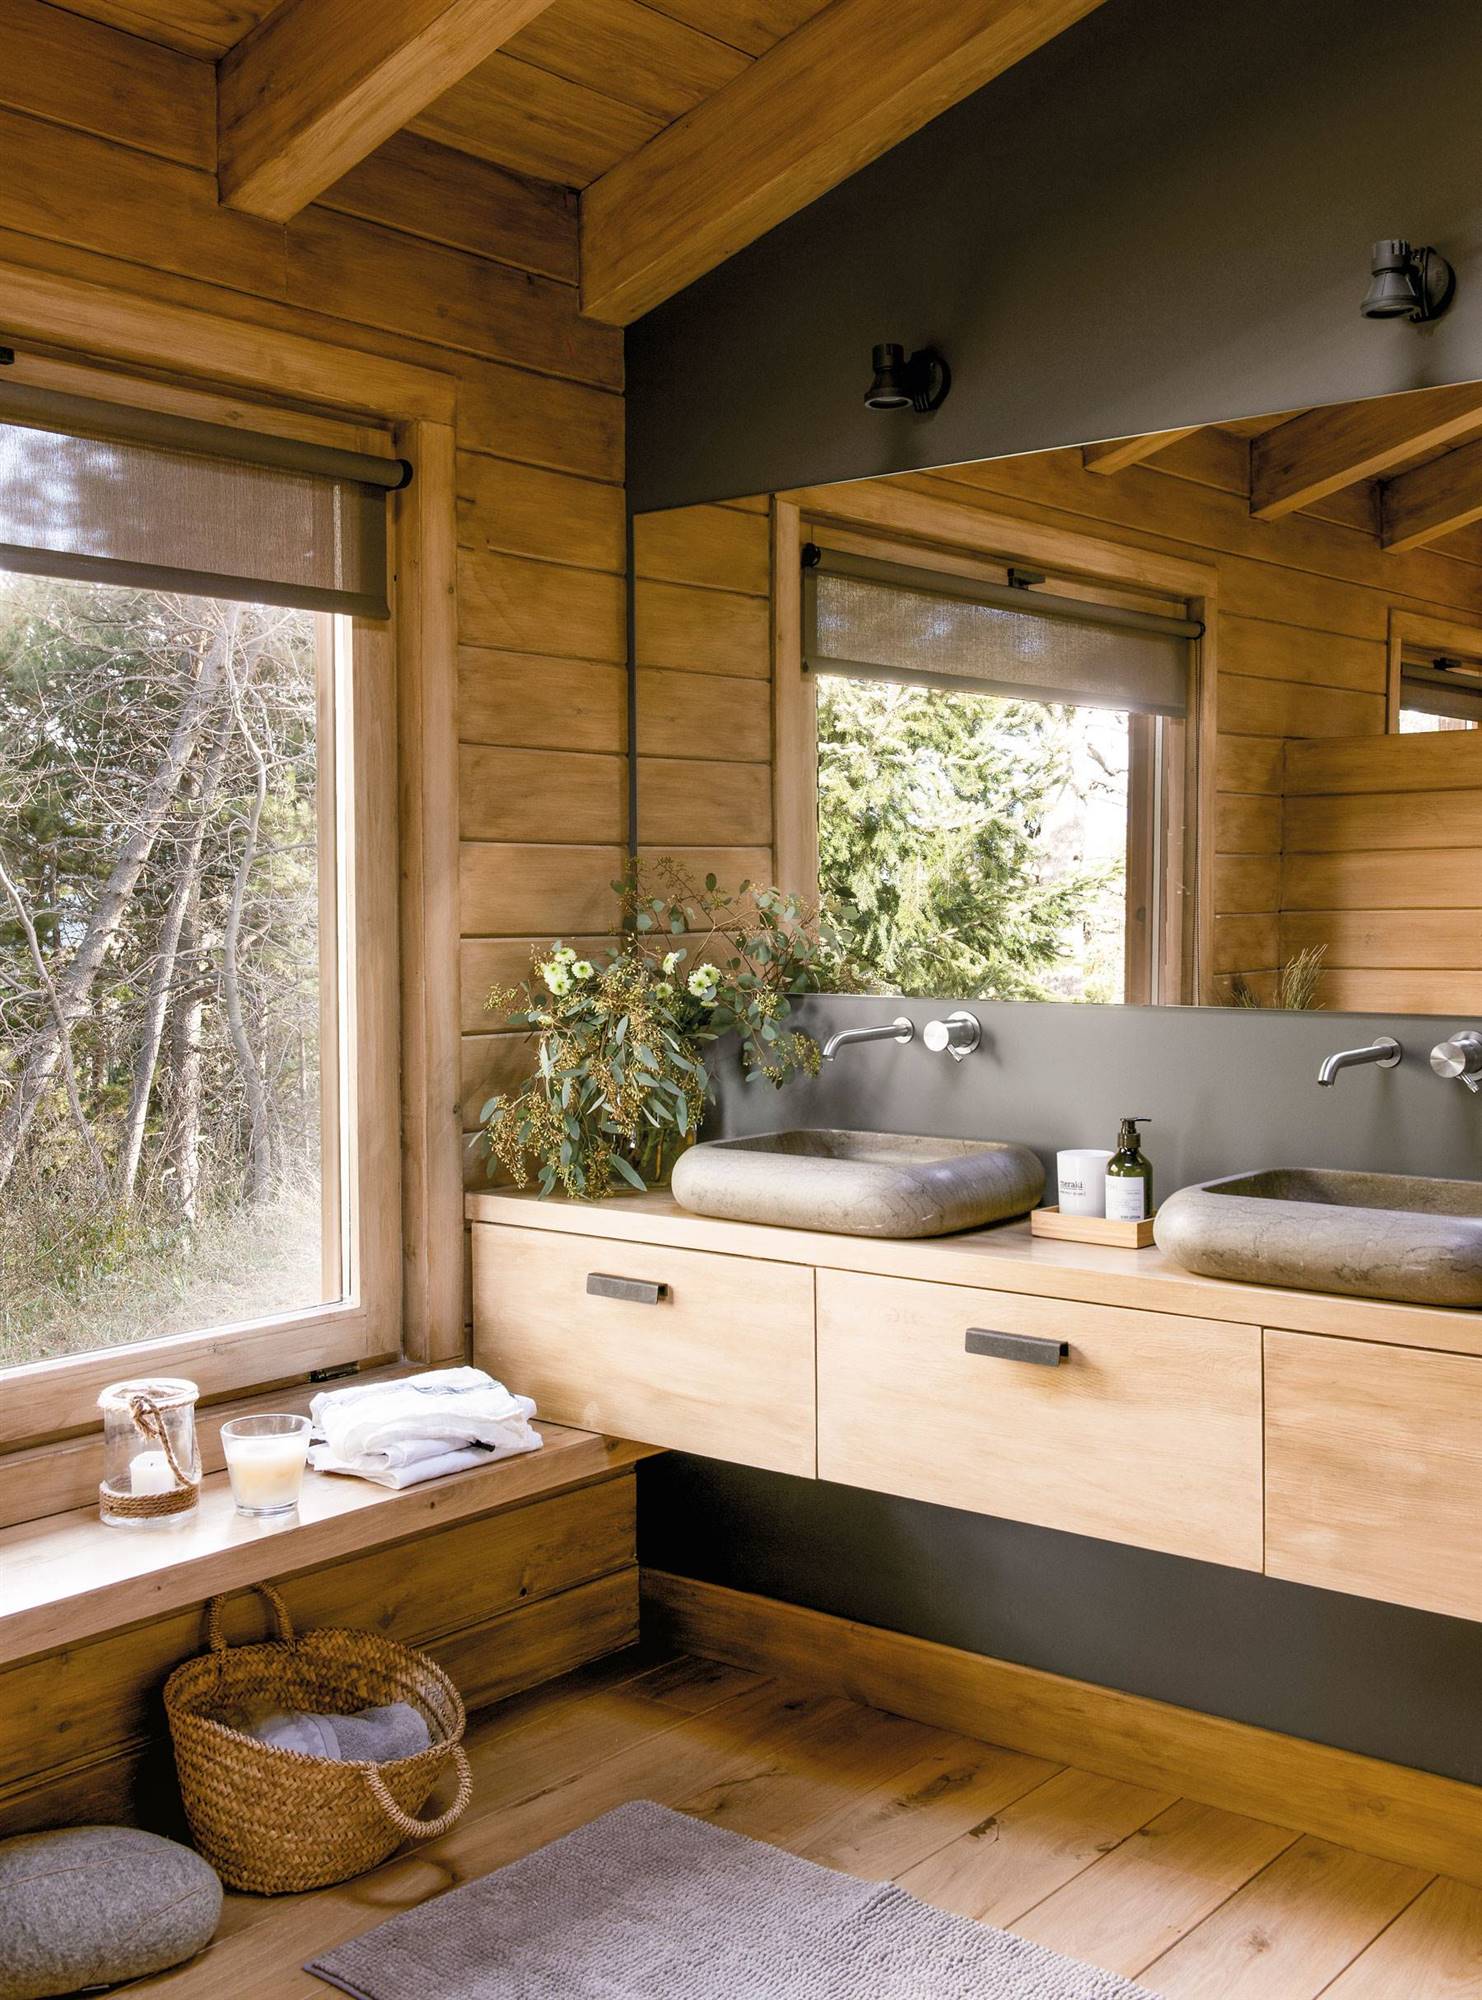 Baño rústico con paredes en color gris y muebles de madera 00474725